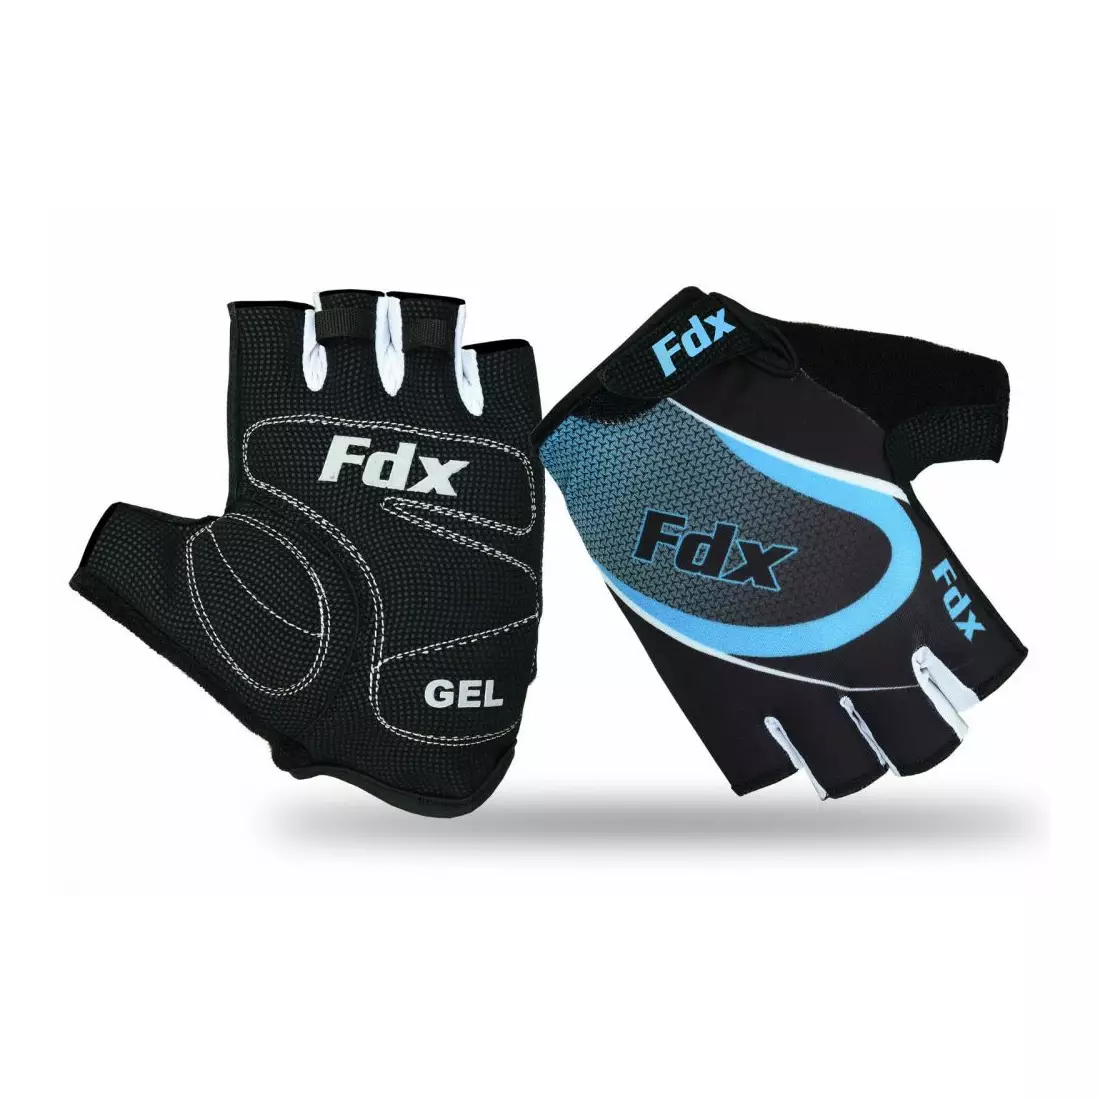 Mănuși de ciclism pentru bărbați FDX 1010 negre și albastre